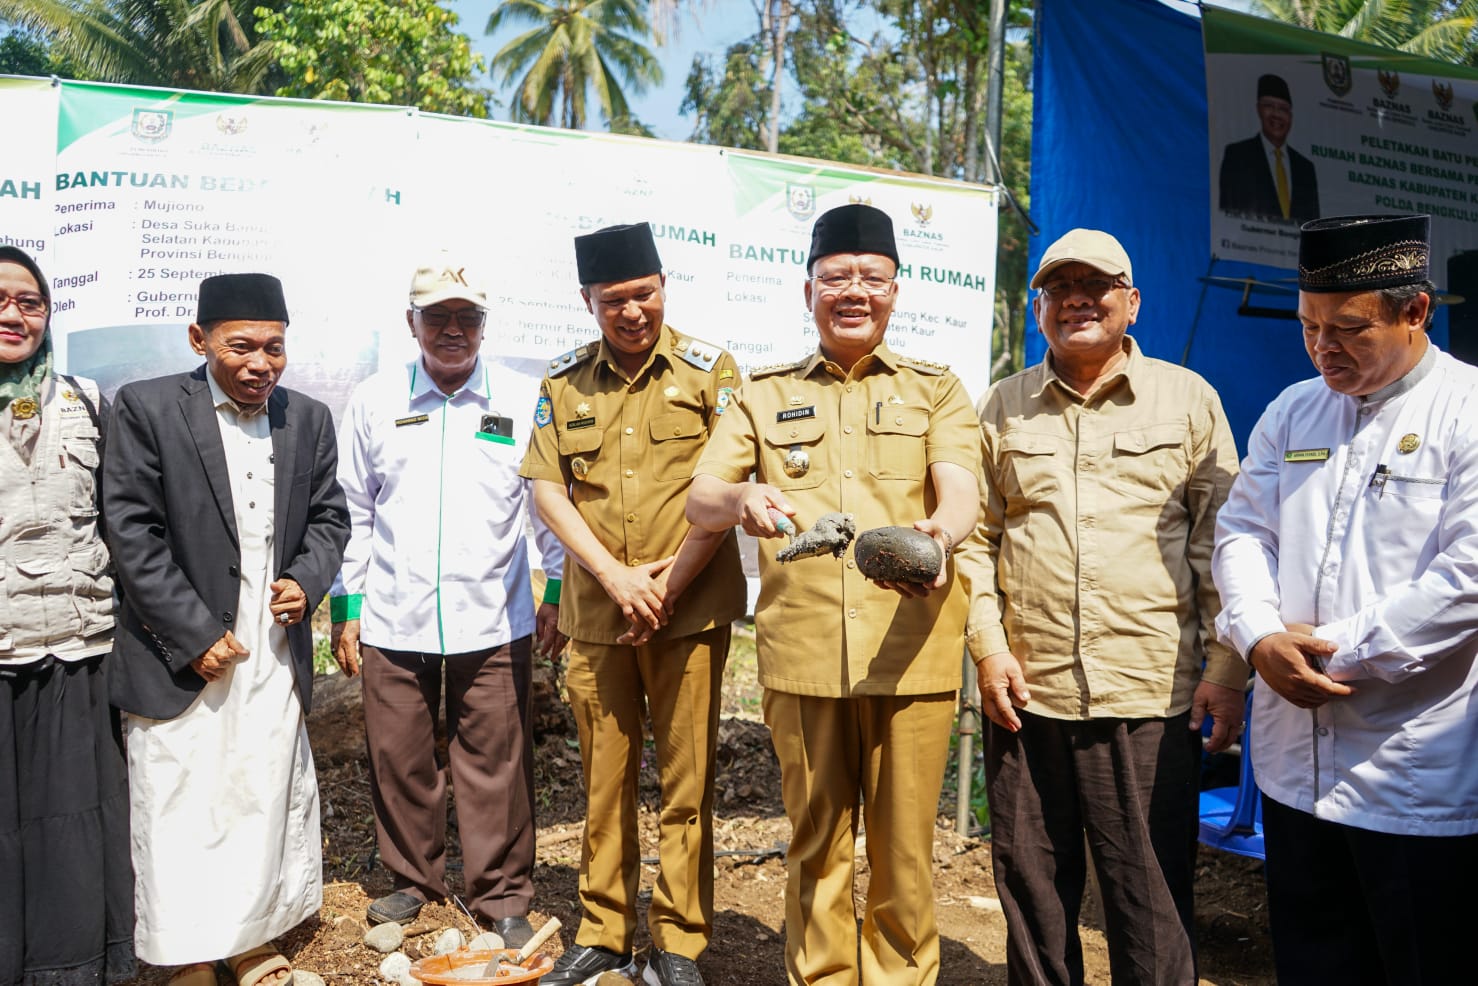 Gubernur Bengkulu Serahkan Bantuan RTLH dan Tabung Gas Elpiji 3 Kg, Ingatkan Pentingnya Saling Membantu